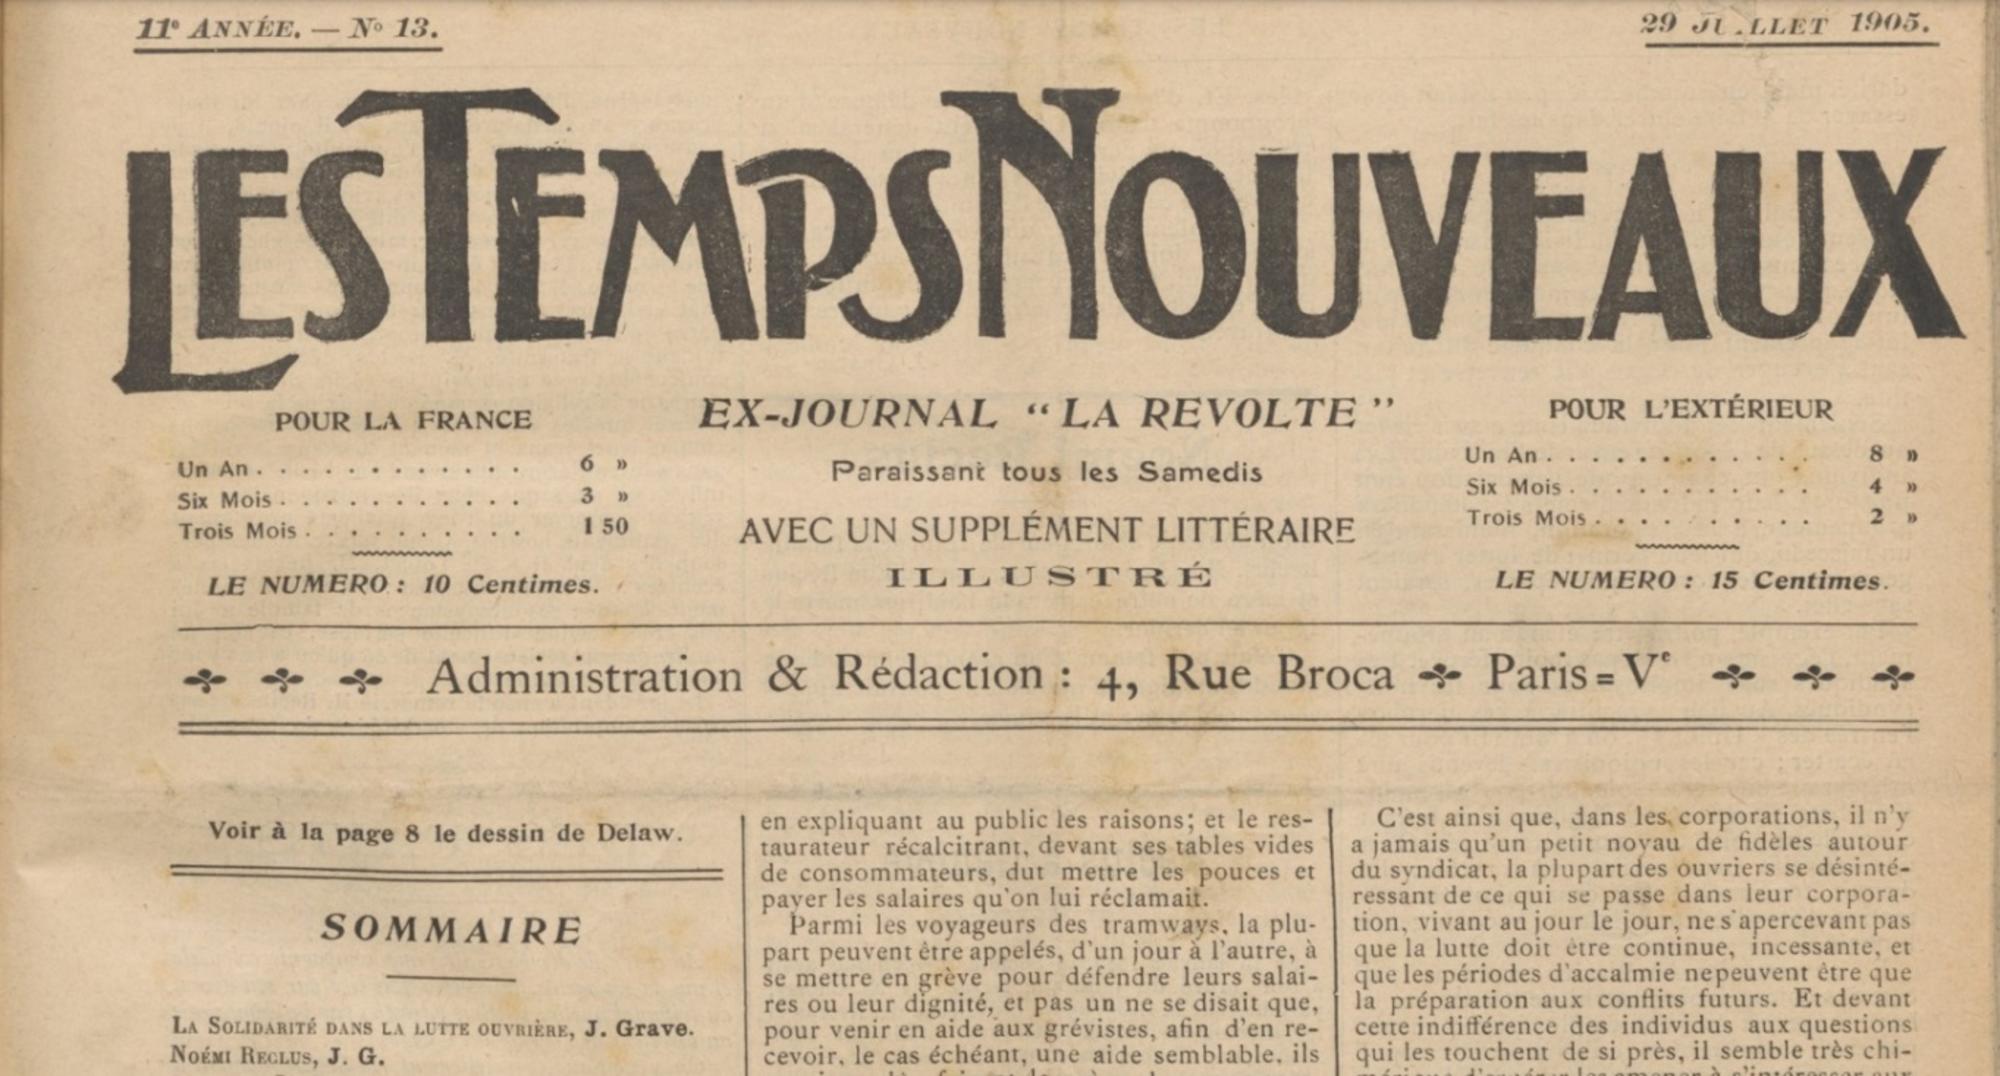 Les Temps Nouveaux, 29-07-1905, necrológica de Jean Grave sobre Noémi Reclus